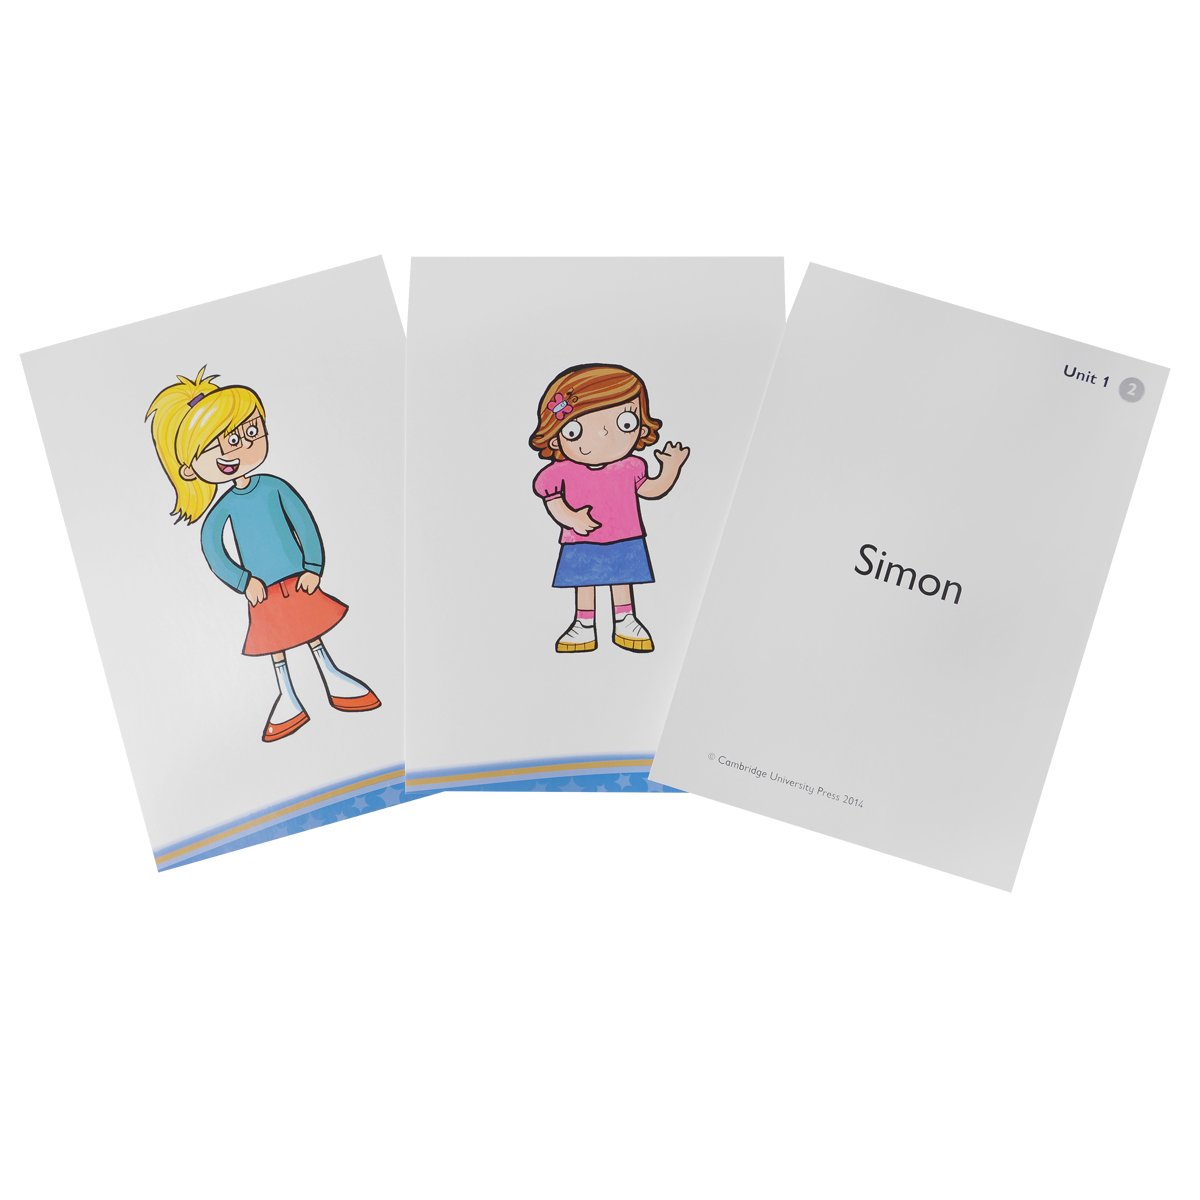 Kids Box: Level 2: Flashcards 103 карточек) развивается запасливо накапливая